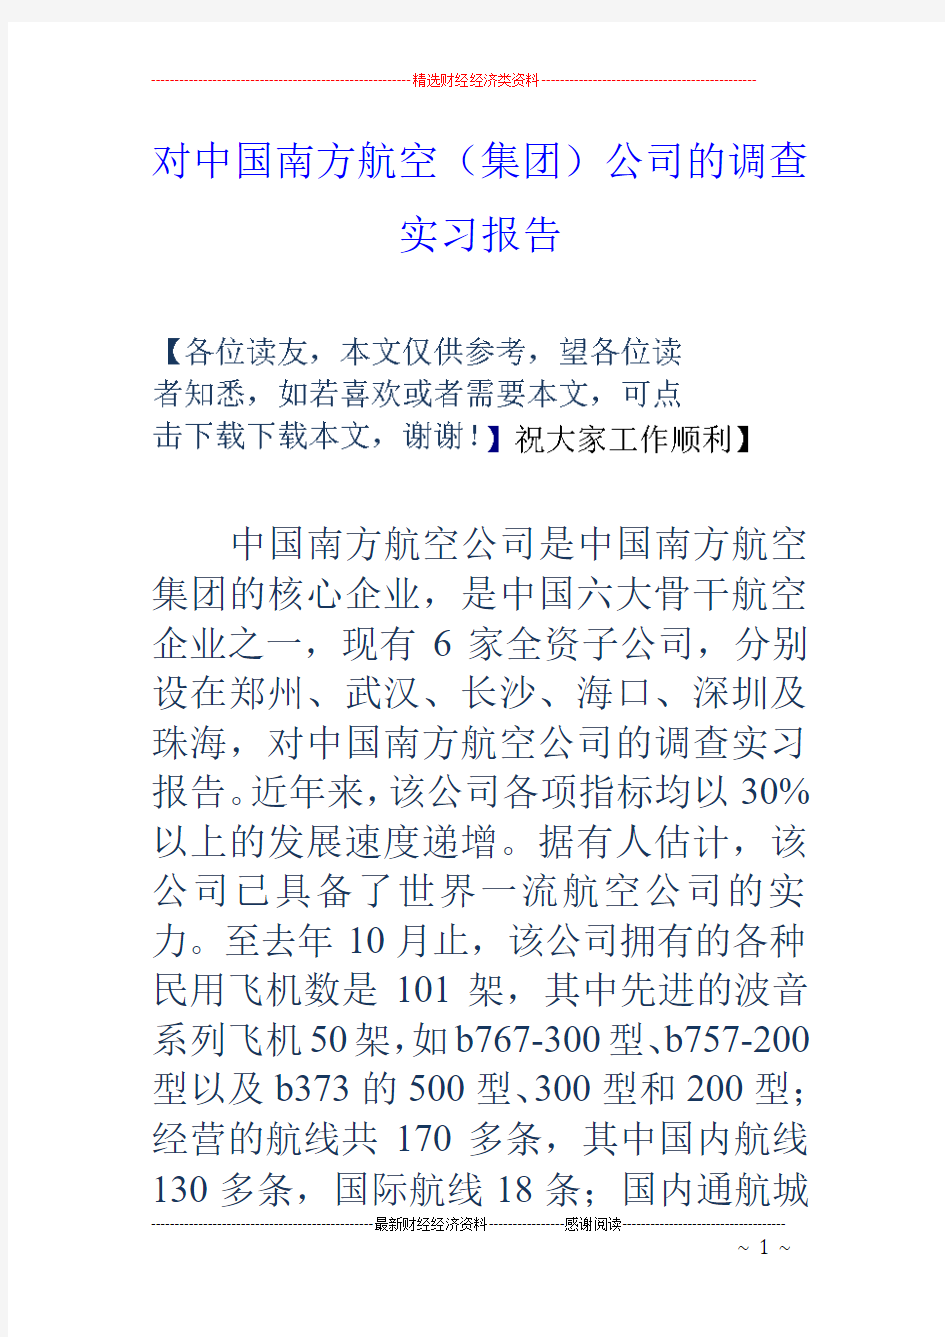 对中国南方航空(集团)公司的调查实习报告